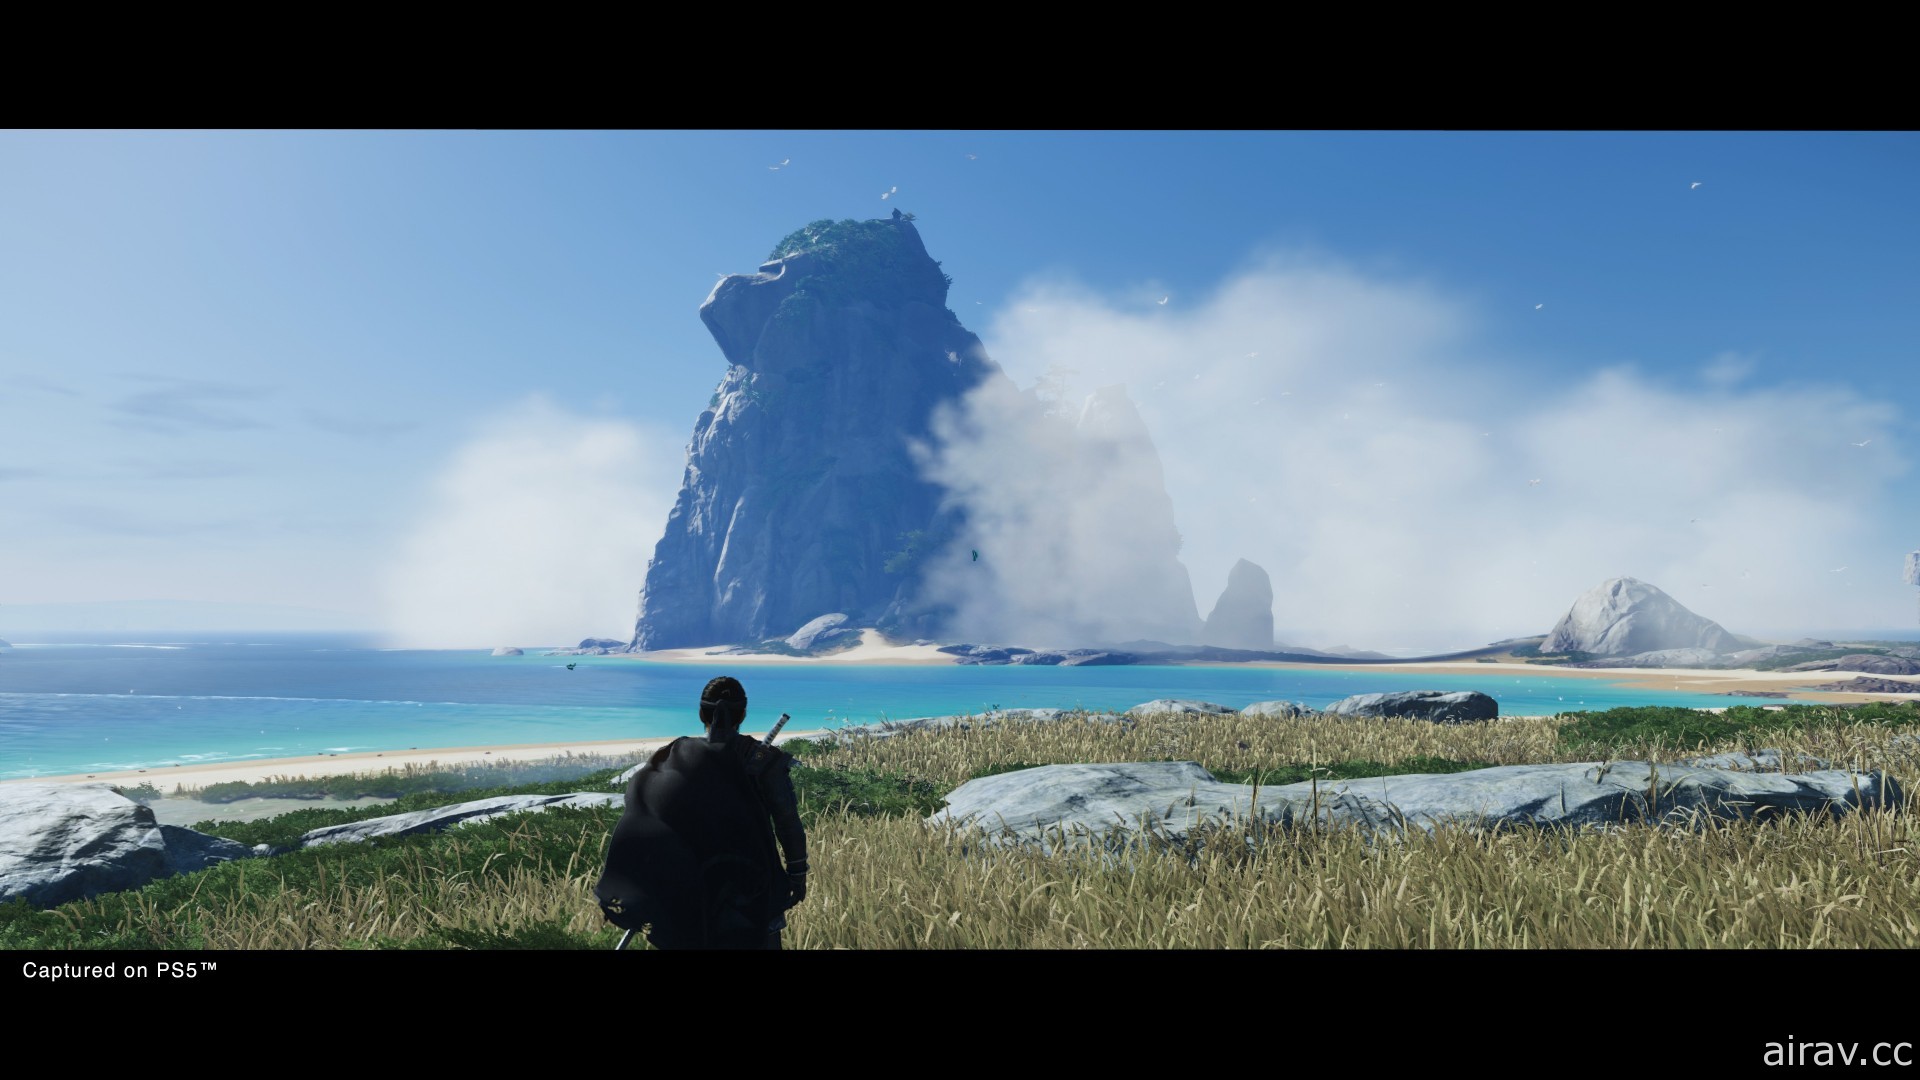 《对马战鬼 导演版》8 月登场 追加 PS5 强化功能与“壹歧岛之章”新内容